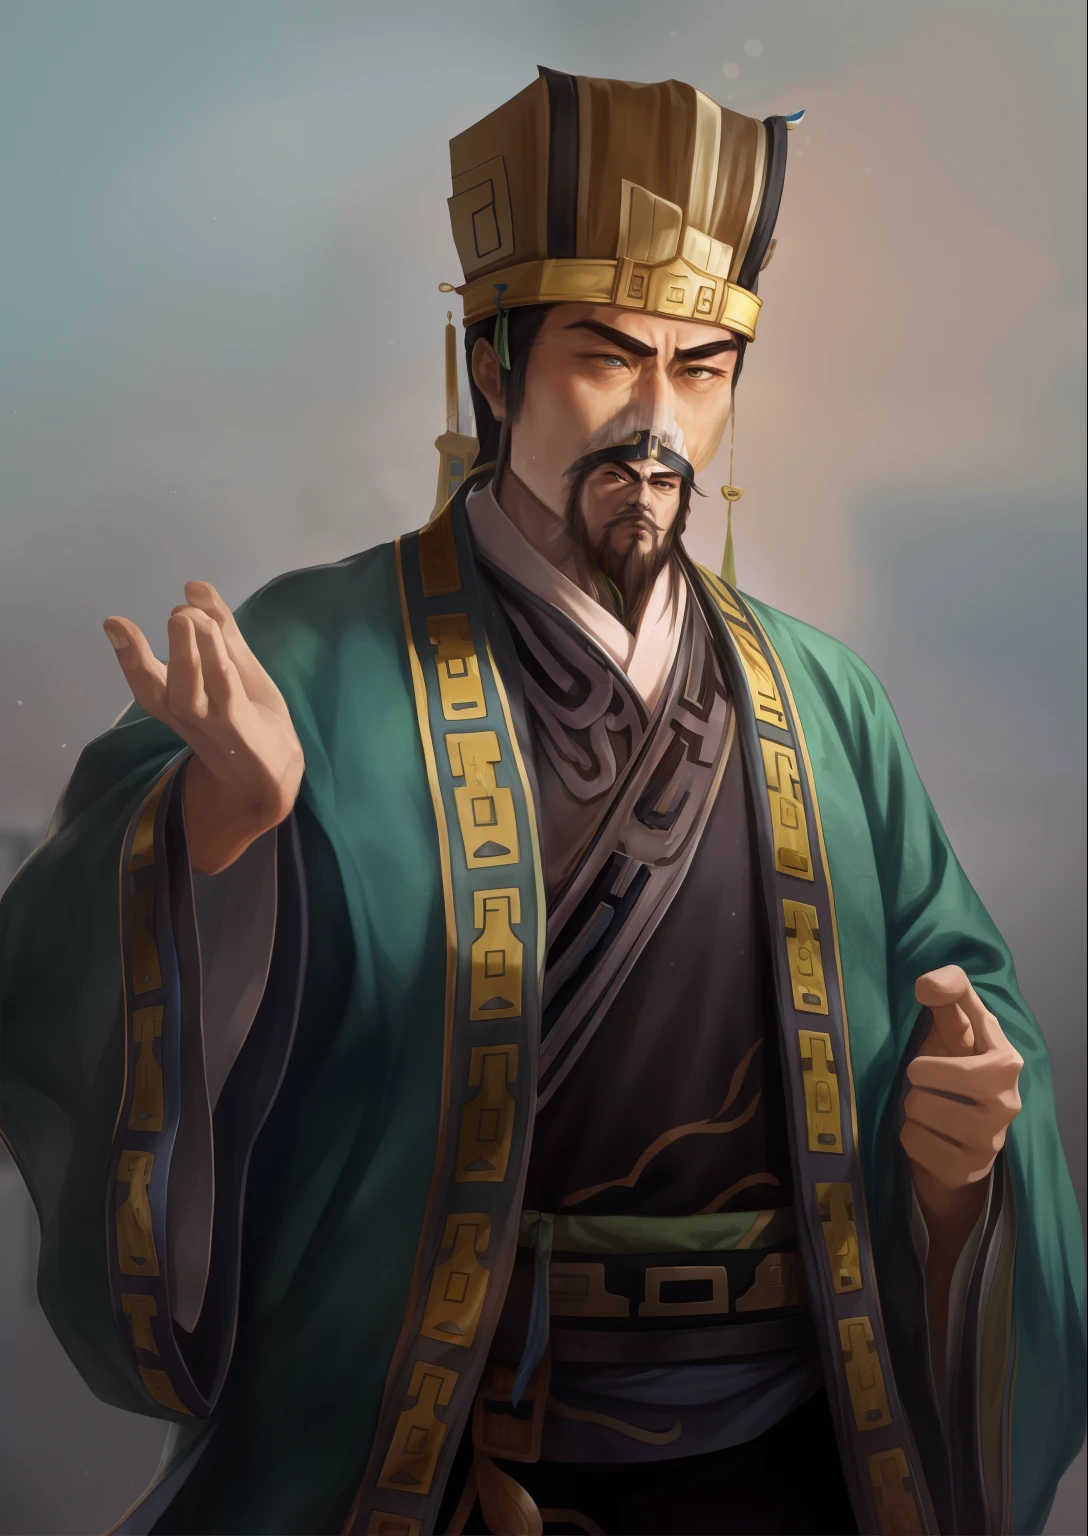 Один из них был одет в зеленый халат.。，Мужчина в короне протянул руки, вдохновленный императором Сюаньдэ, вдохновленный Дун Юанем, Вдохновленный Цао Чжибаем, вдохновленный У Бином, Вдохновлен Ху Цзаобином, вдохновленный Хуан Дином, Вдохновлен Ли Таном, вдохновленный Ли Канем, вдохновленный Чжан Лу, Чжао Юнь, Вдохновлен Чжан Сенъяо